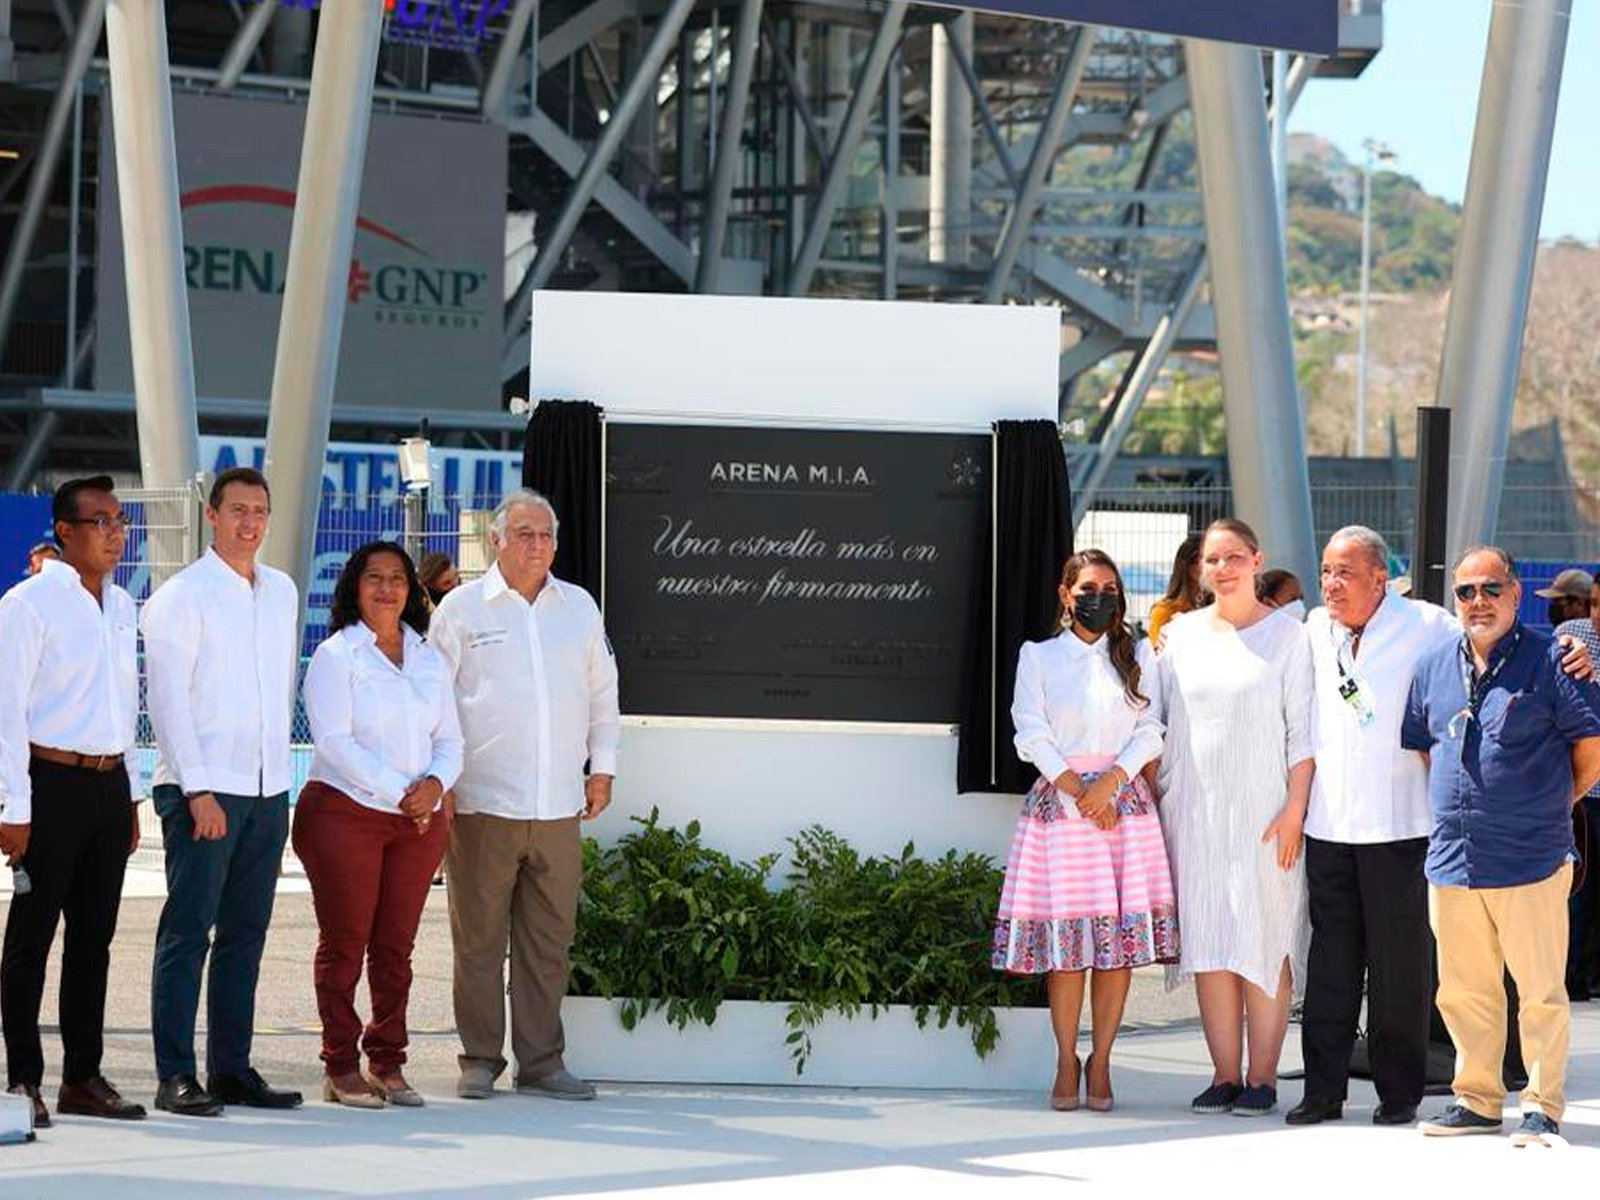 Abierto Mexicano de Tenis estrena nueva sede en Acapulco